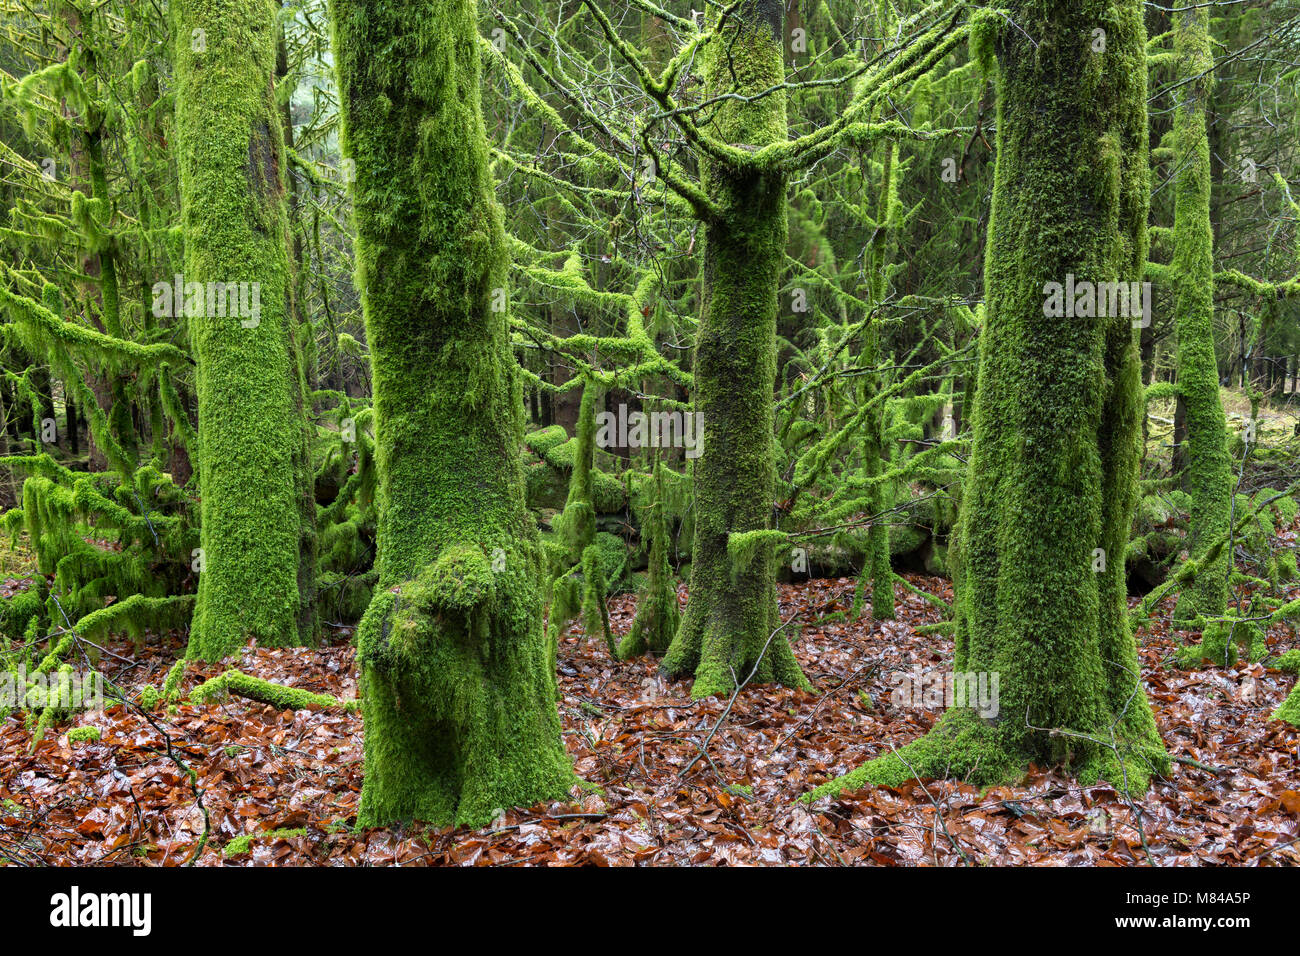 En d'arbres couverts de mousse, bois Bellever Dartmoor National Park, Devon, Angleterre. Hiver (décembre) 2017. Banque D'Images